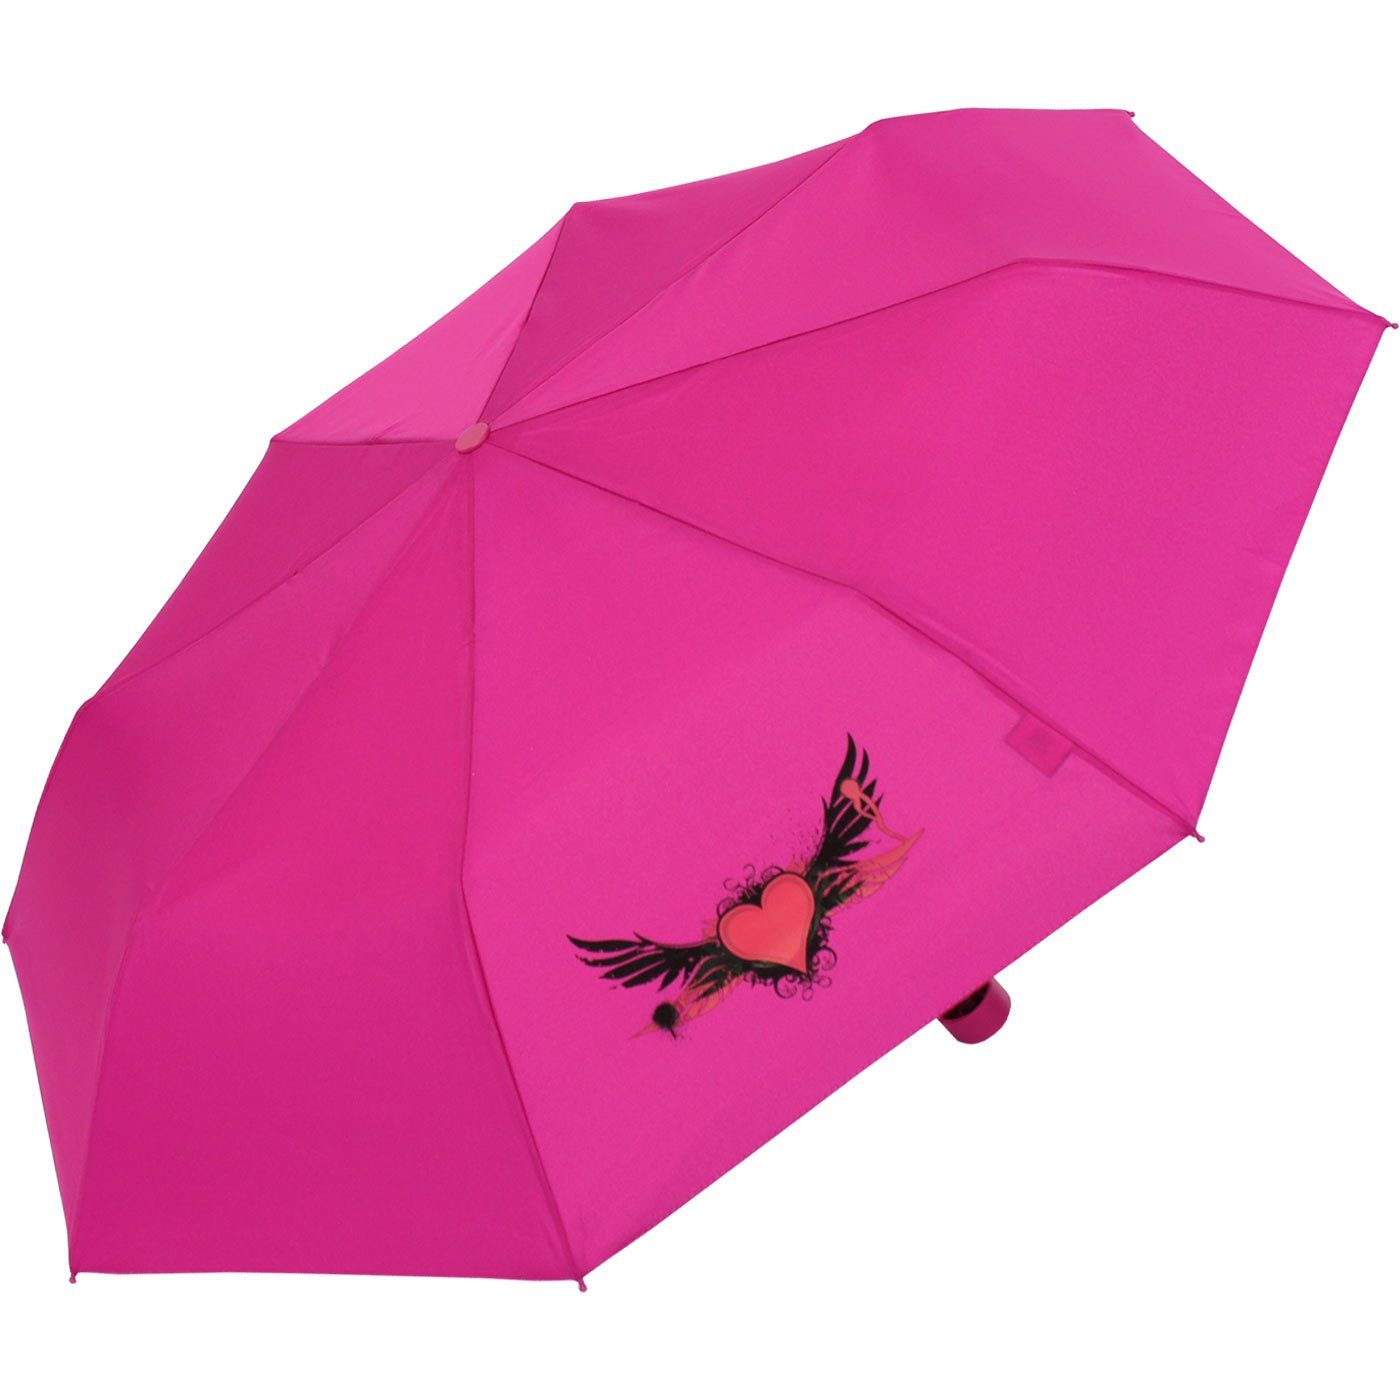 Motiven coolen Kids Mädchen Taschenregenschirm Mini für Schirm leicht flieder, - Kinderschirm den derby Schulweg ein heart leichter mit